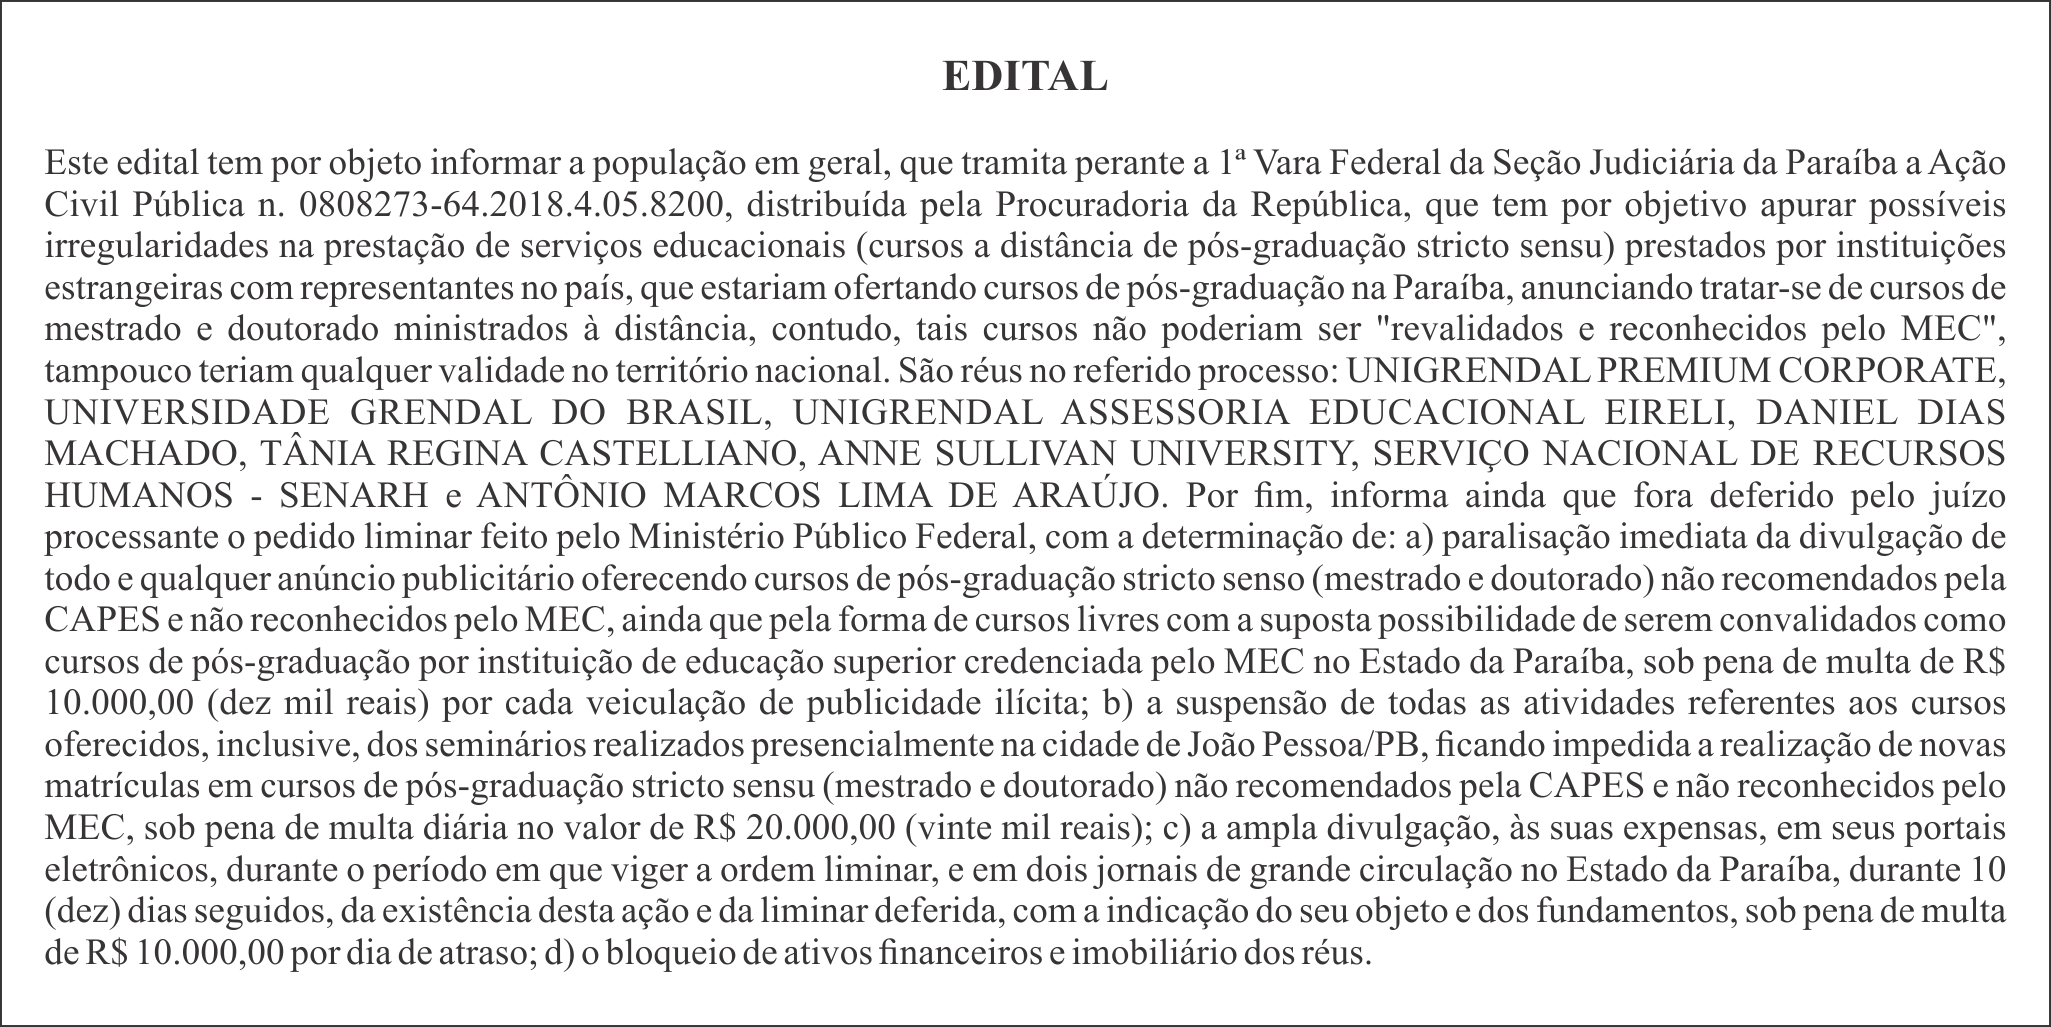 EDITAL DE DETERMINAÇÃO JUDICIAL